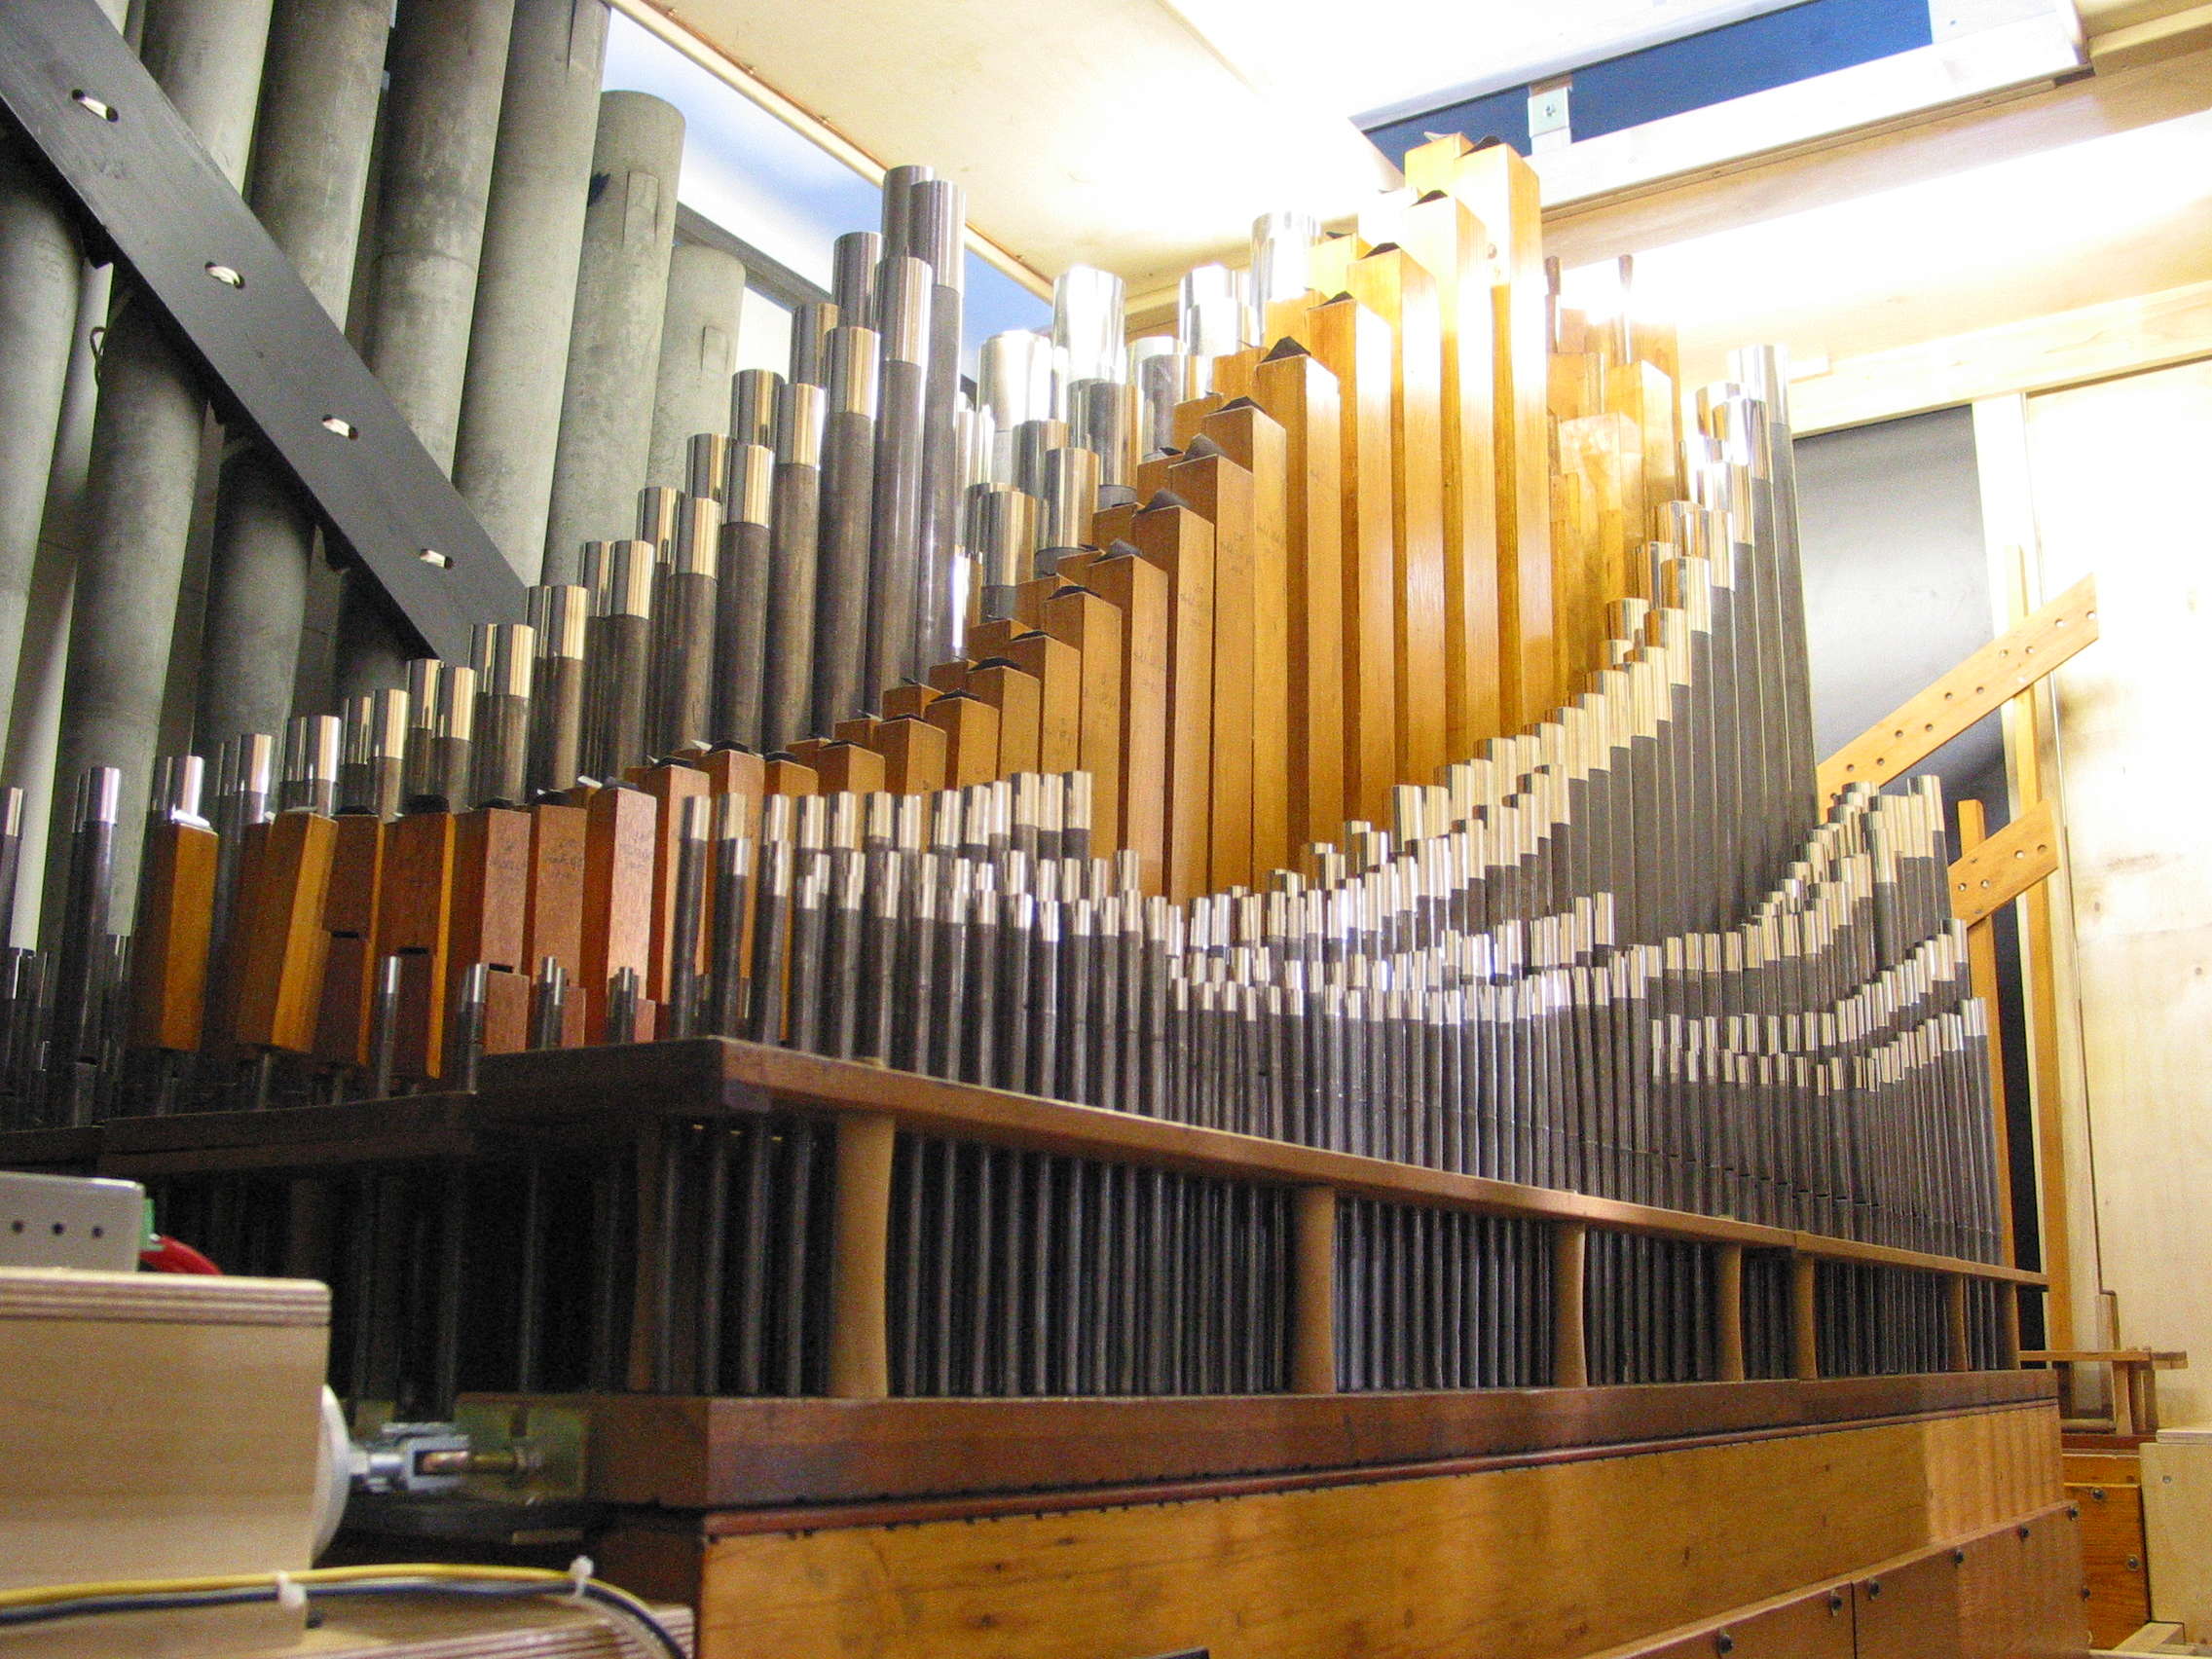 Great Organ pipework